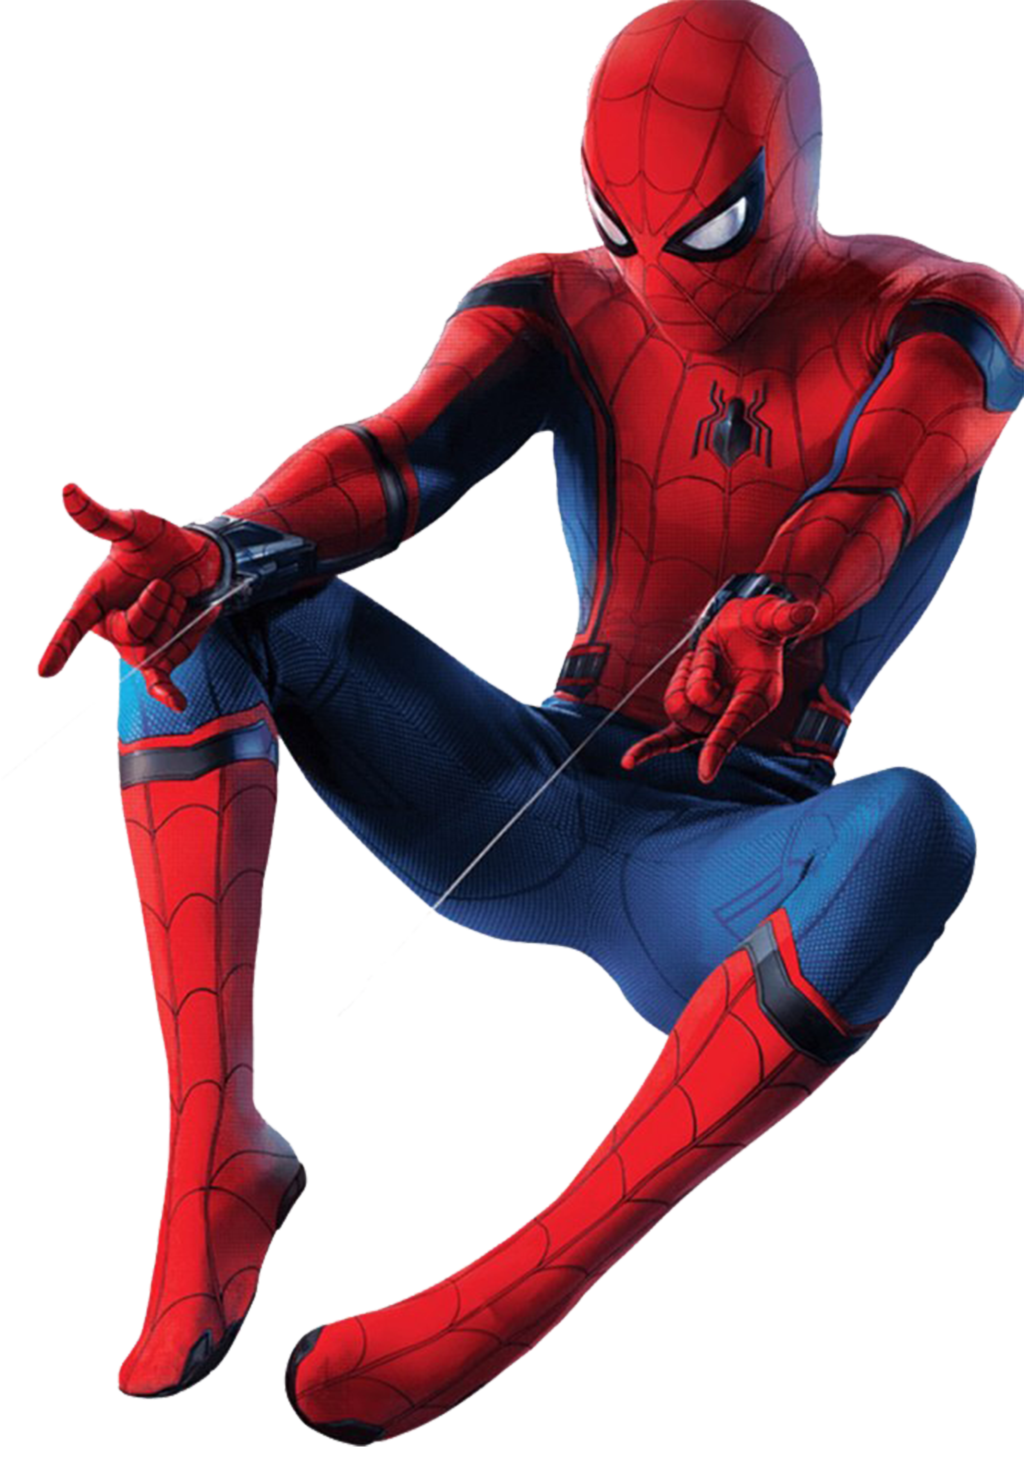 Qui est Spiderman, l'homme-araignée de Marvel ?